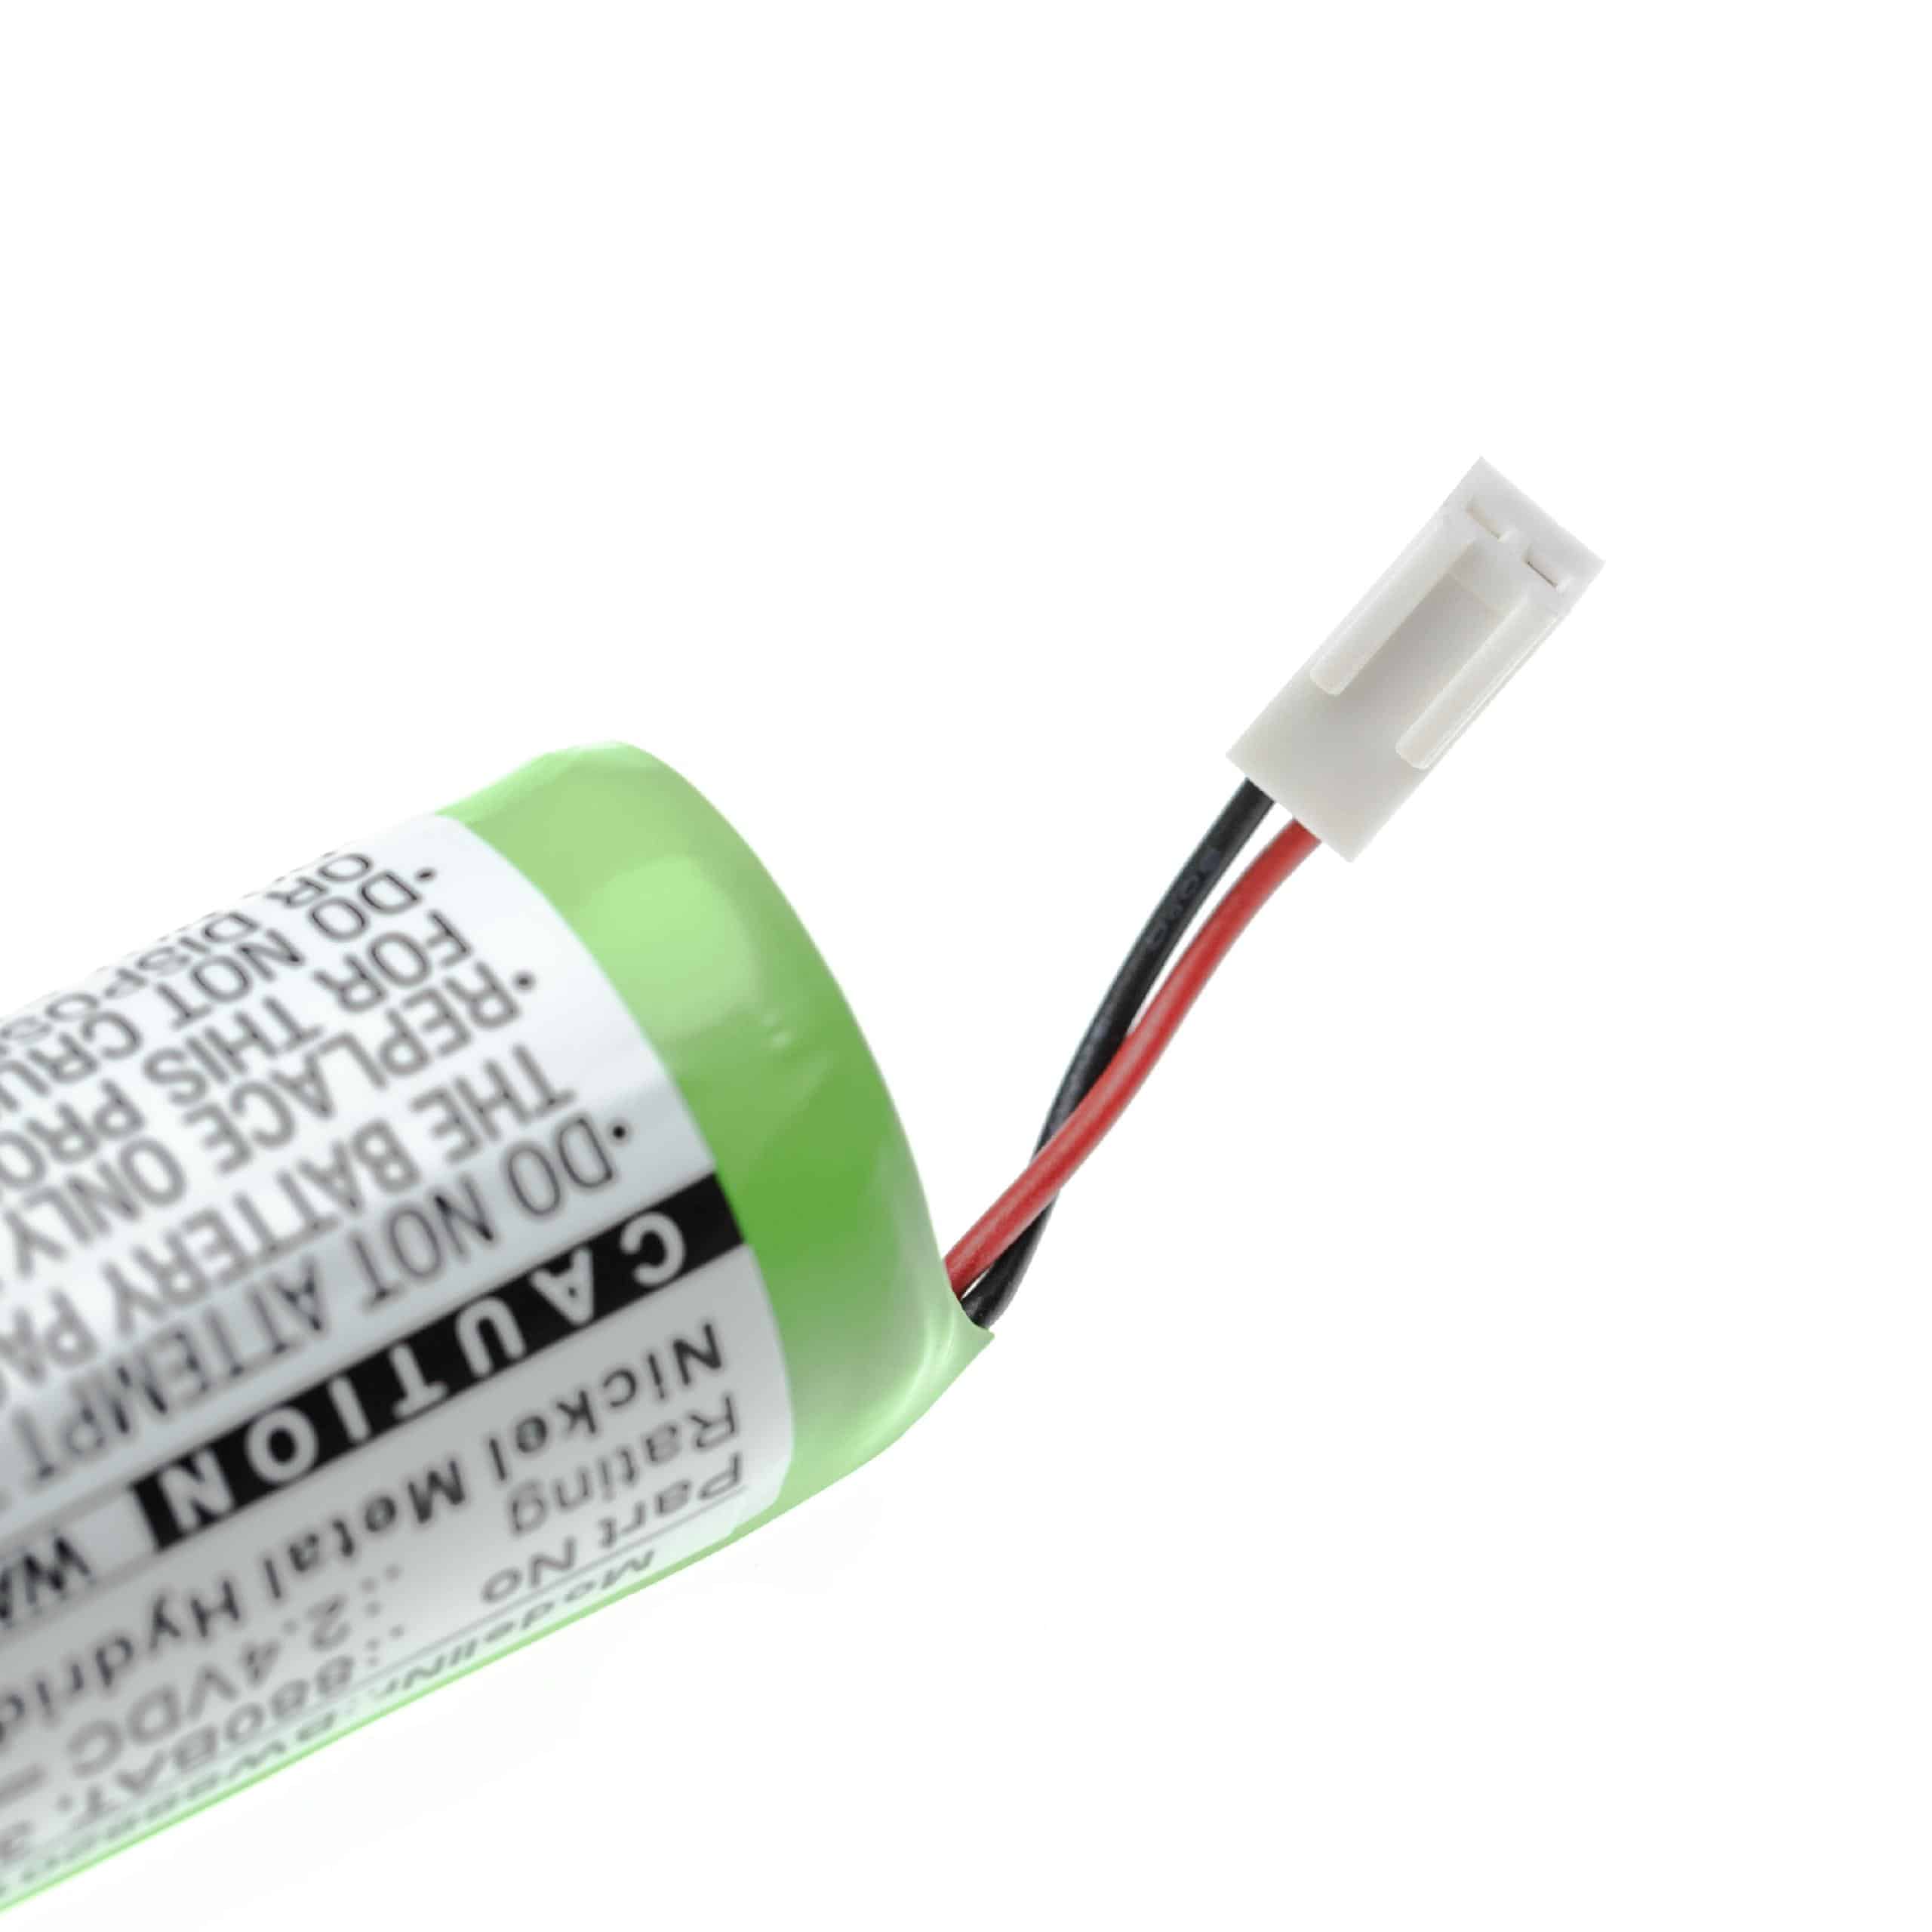 Batterie remplace NOVIPro 3000BAT, 880BAT pour outil de mesure - 3500mAh 2,4V NiMH